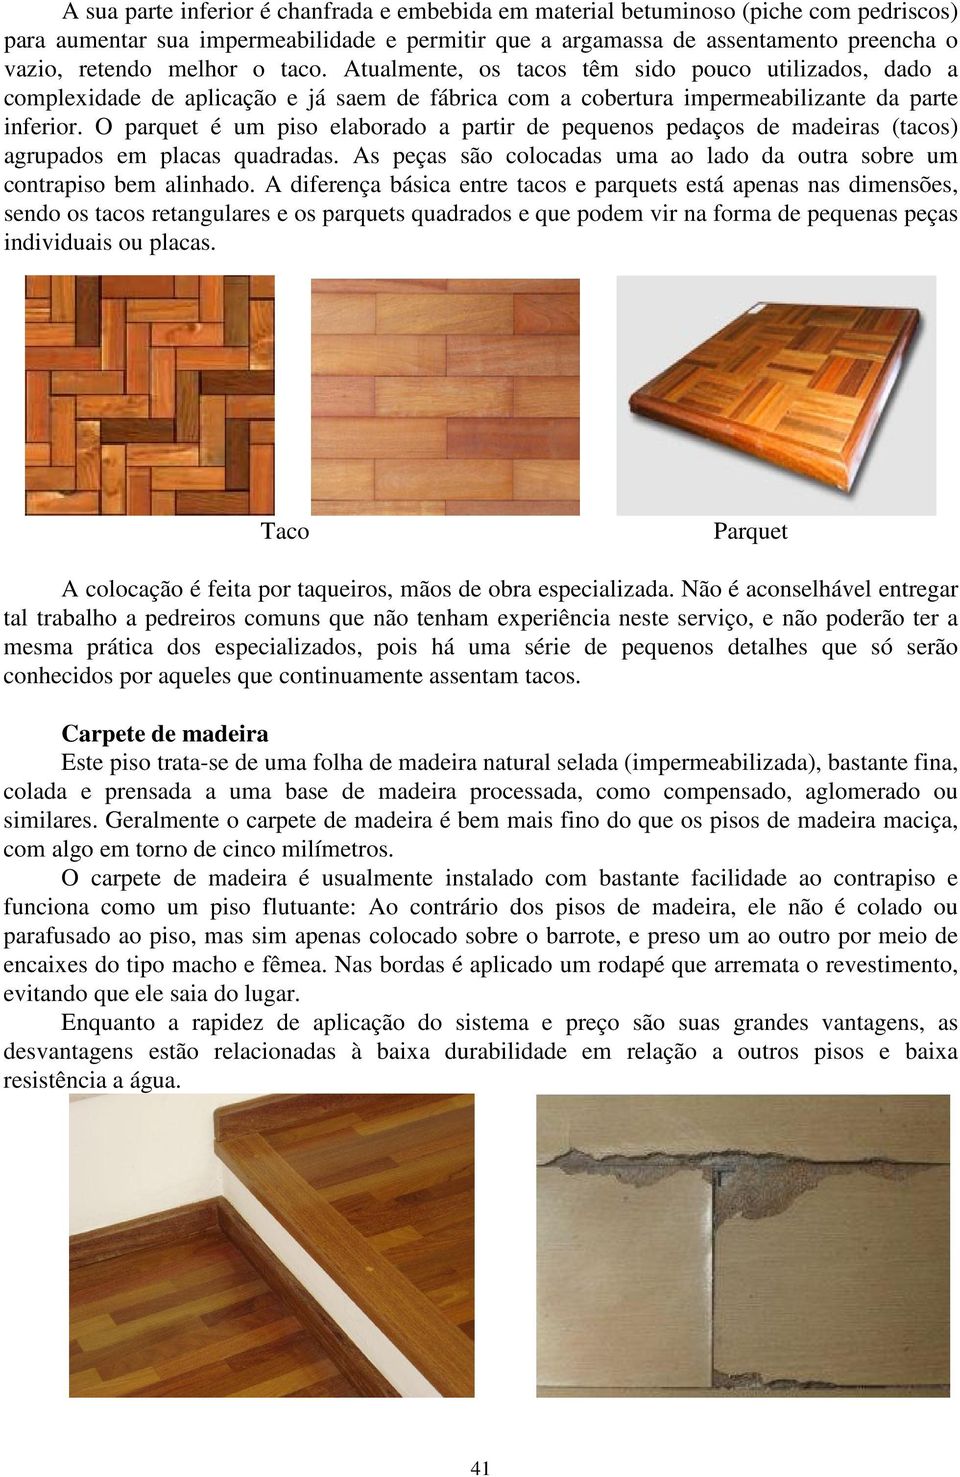 O parquet é um piso elaborado a partir de pequenos pedaços de madeiras (tacos) agrupados em placas quadradas. As peças são colocadas uma ao lado da outra sobre um contrapiso bem alinhado.